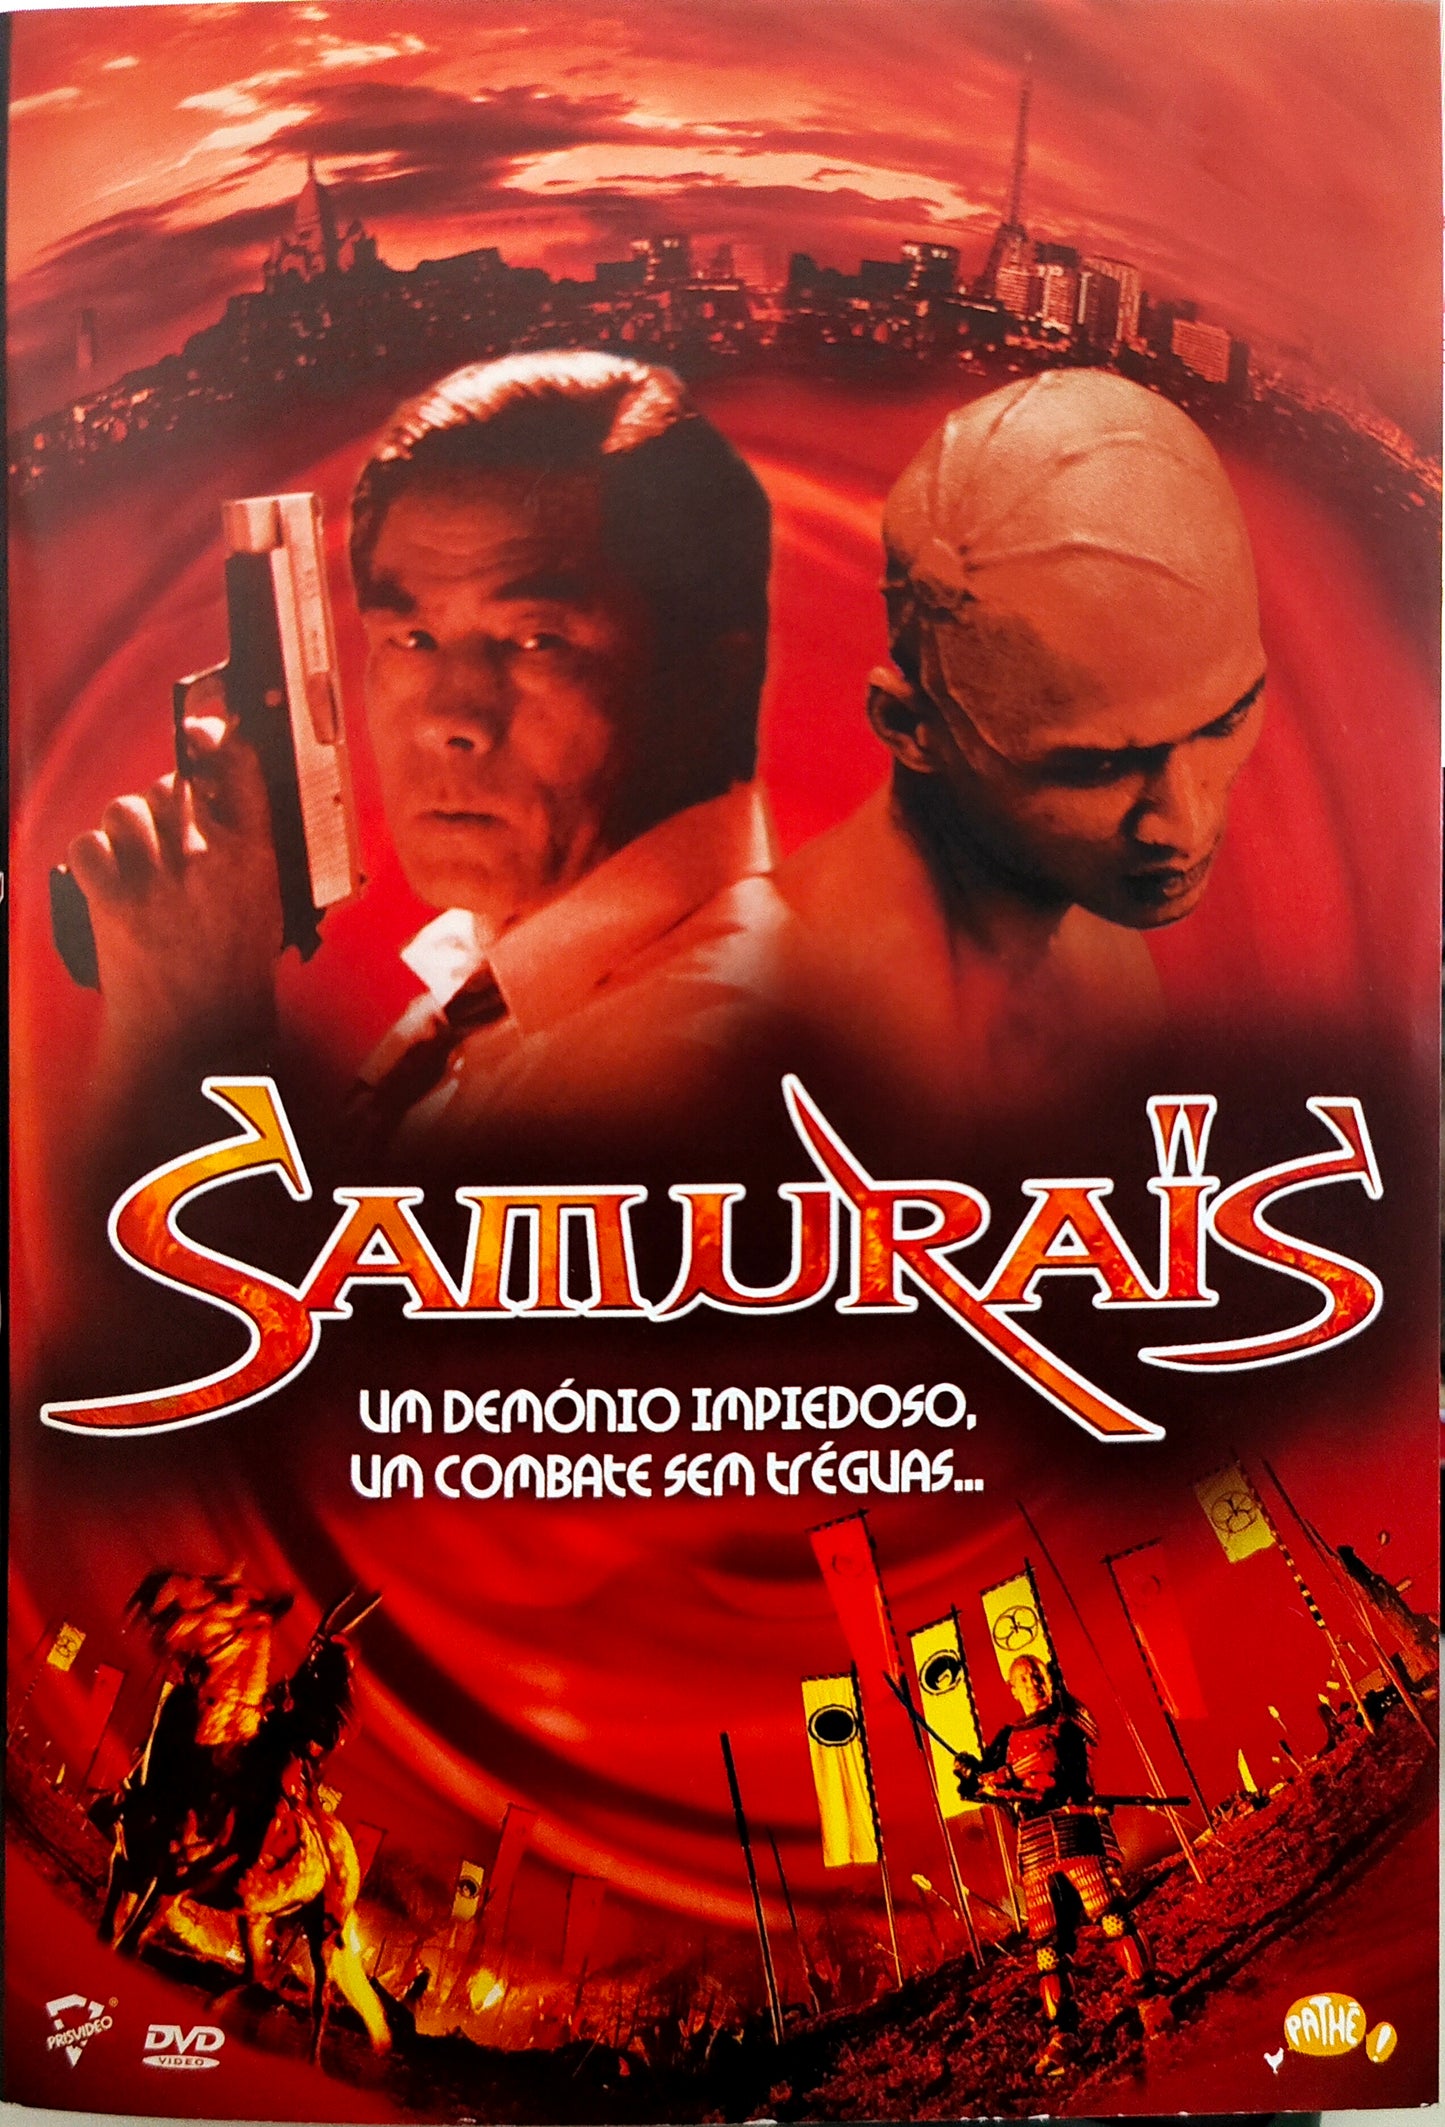 DVD Samurais - Usado